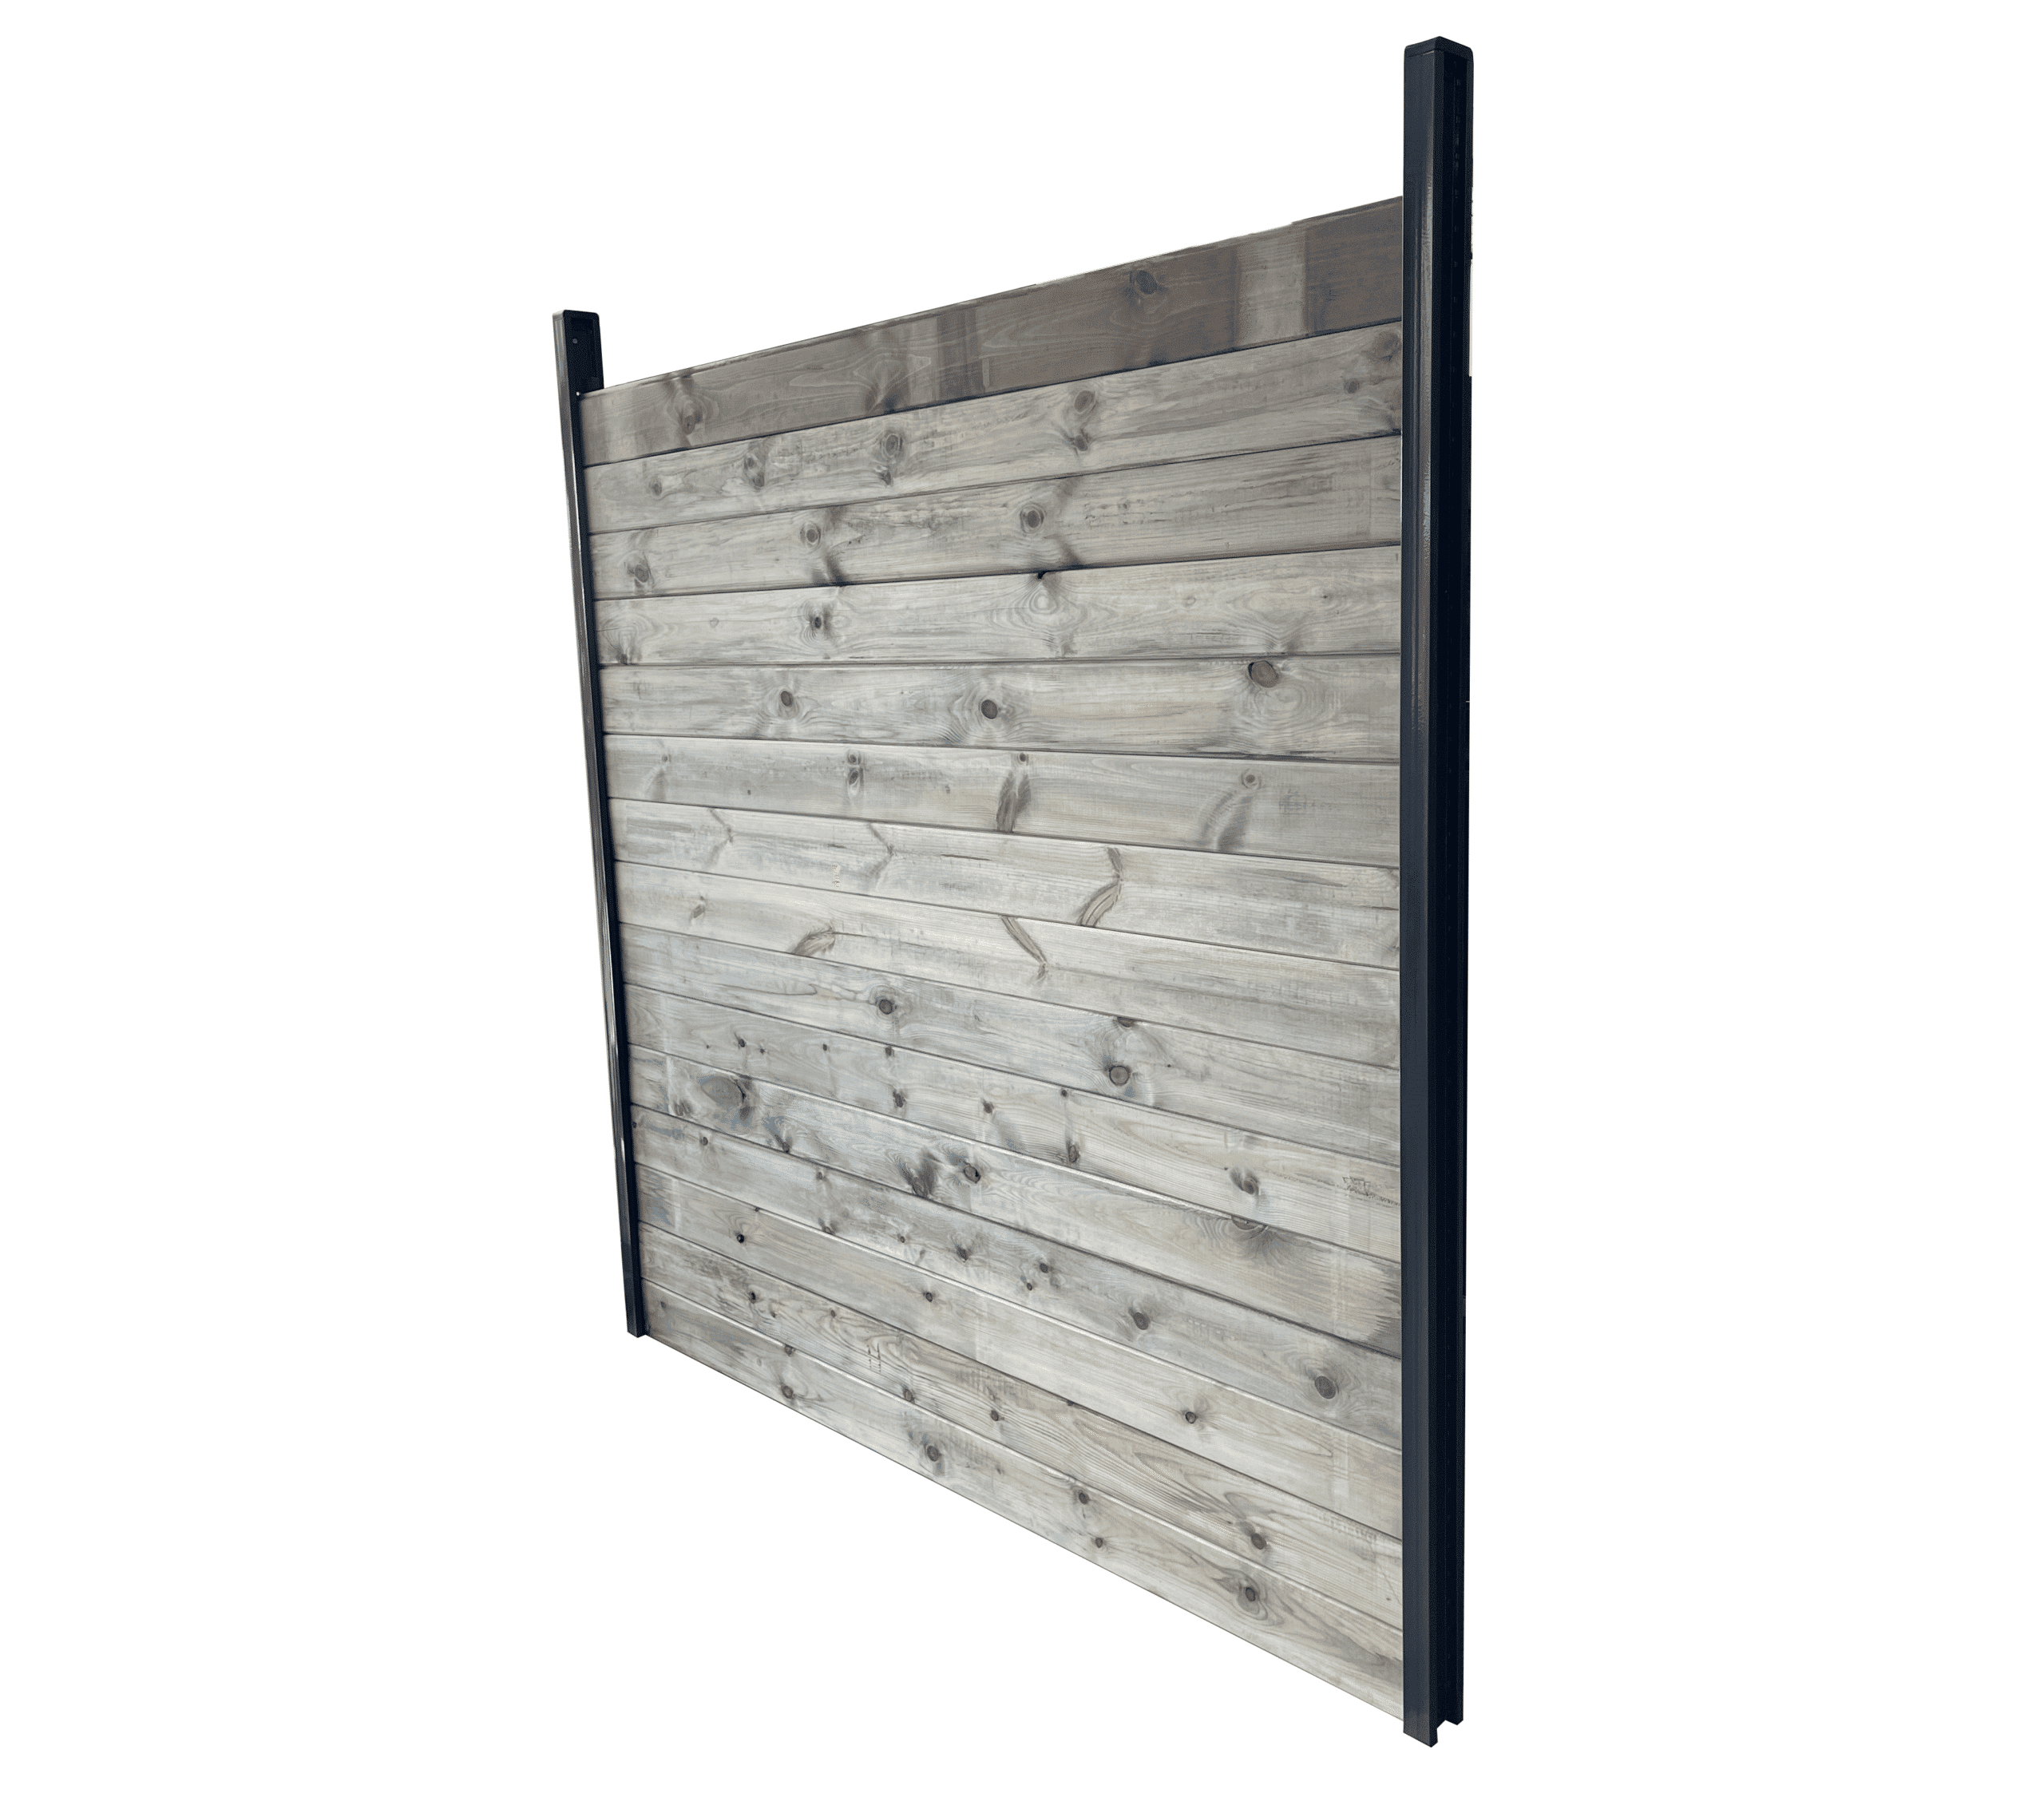 Kit clôture bois massif|20m de longueur|pin sylvestre traité autoclave gris|hauteur : 1,82m|2m entre poteaux